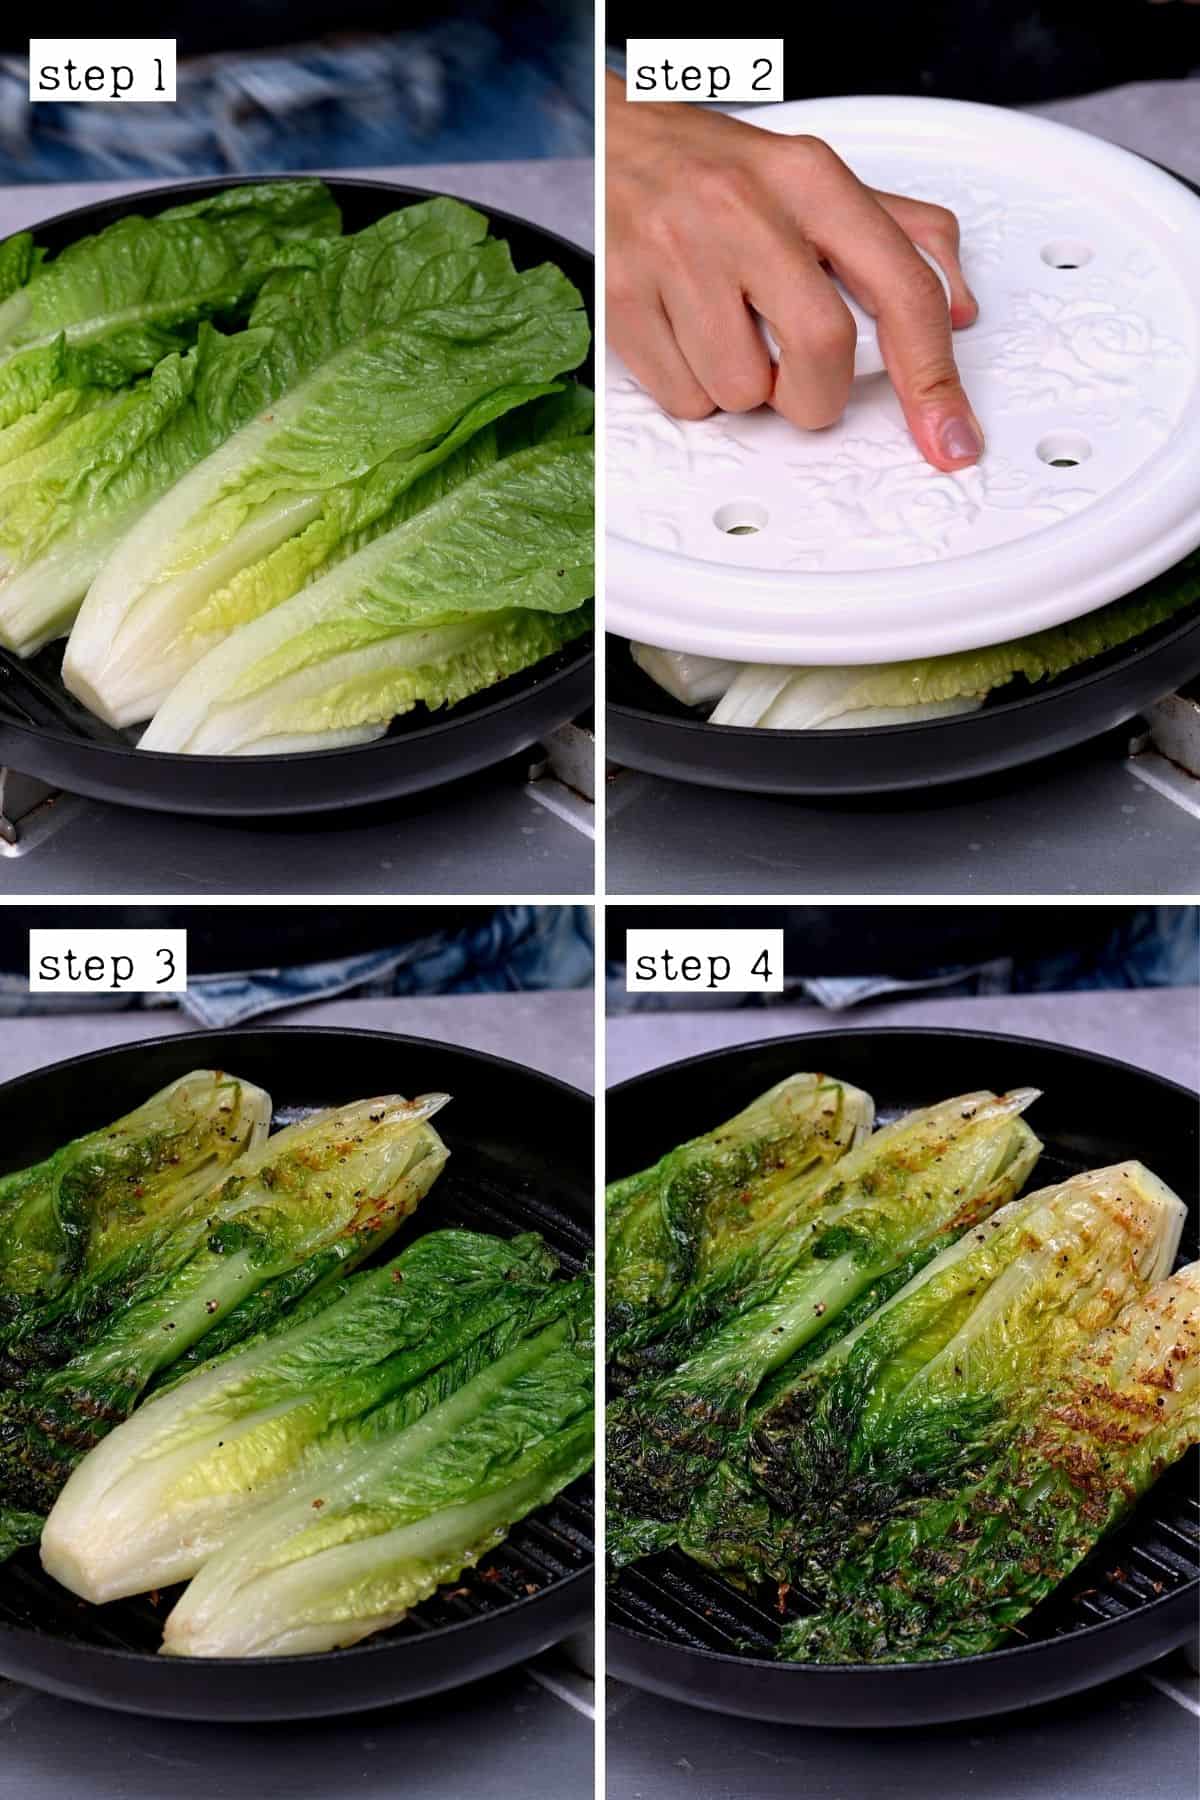 Steps for grilling Romaine lettuce